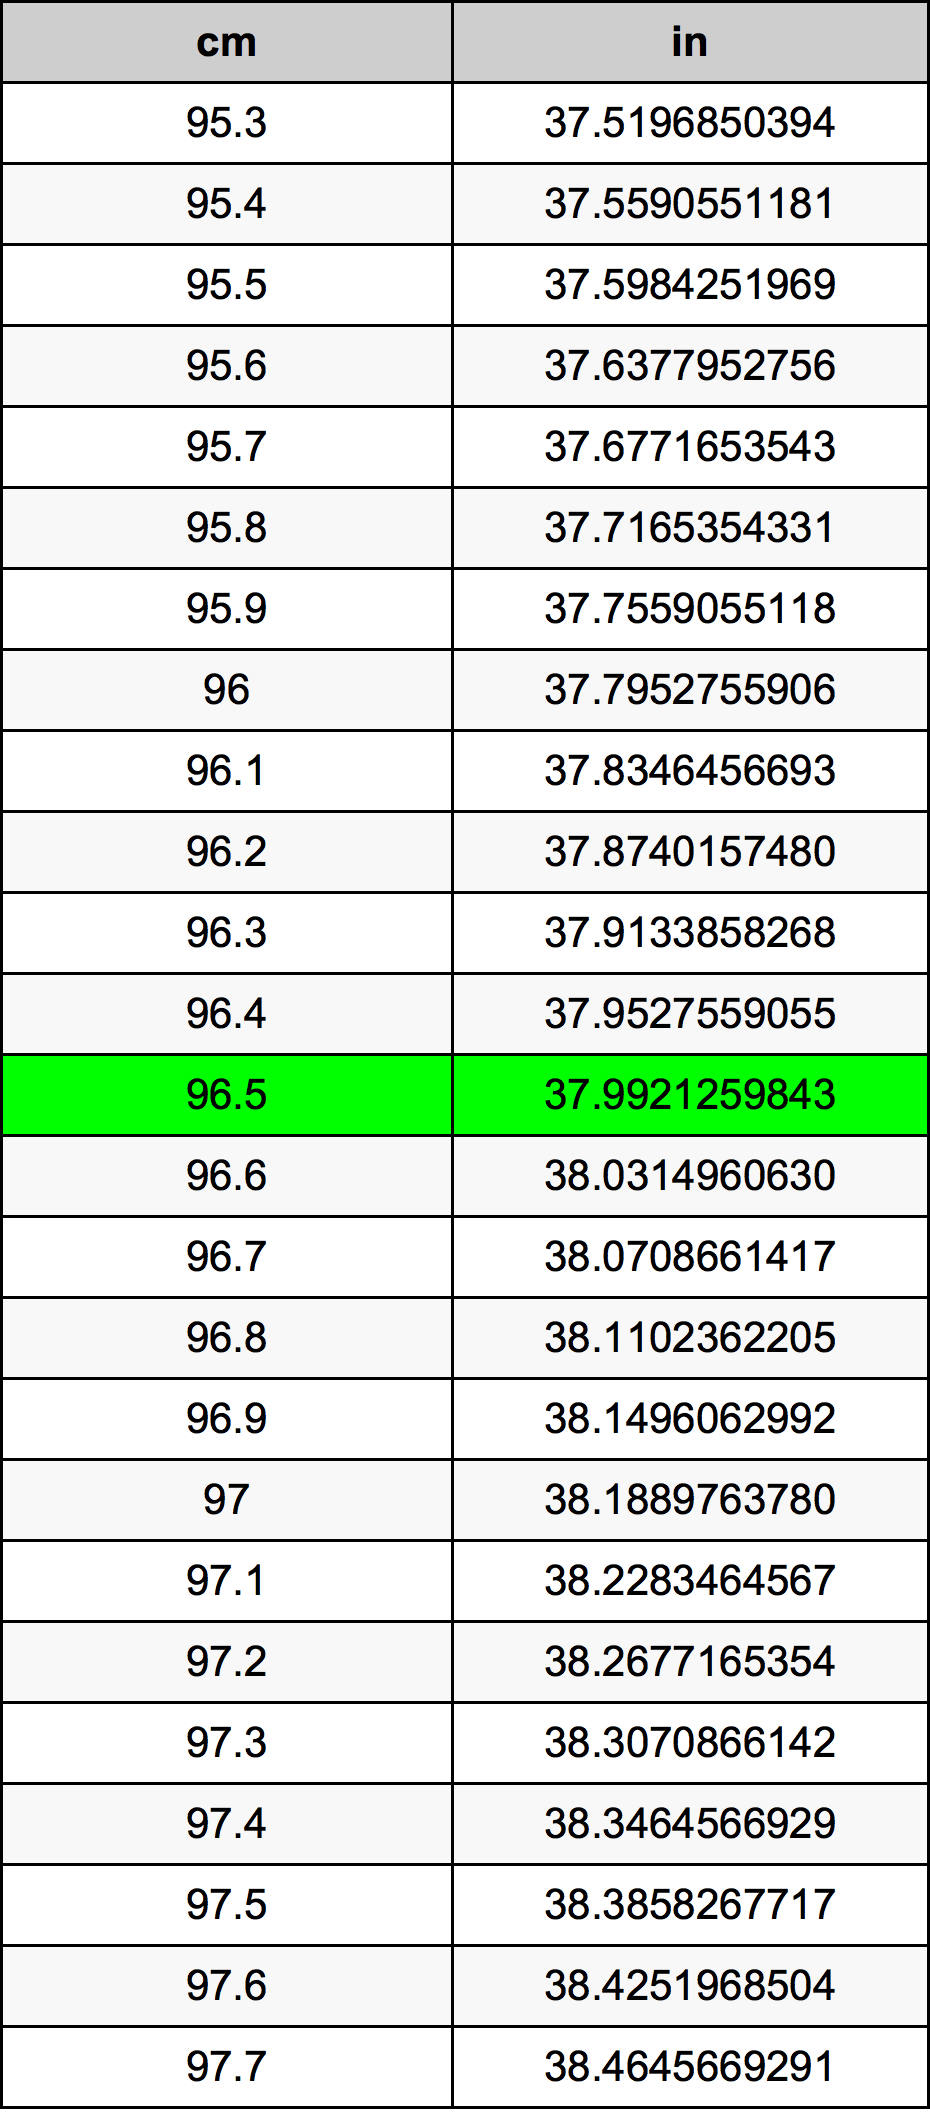 96.5 Centiméter átszámítási táblázat